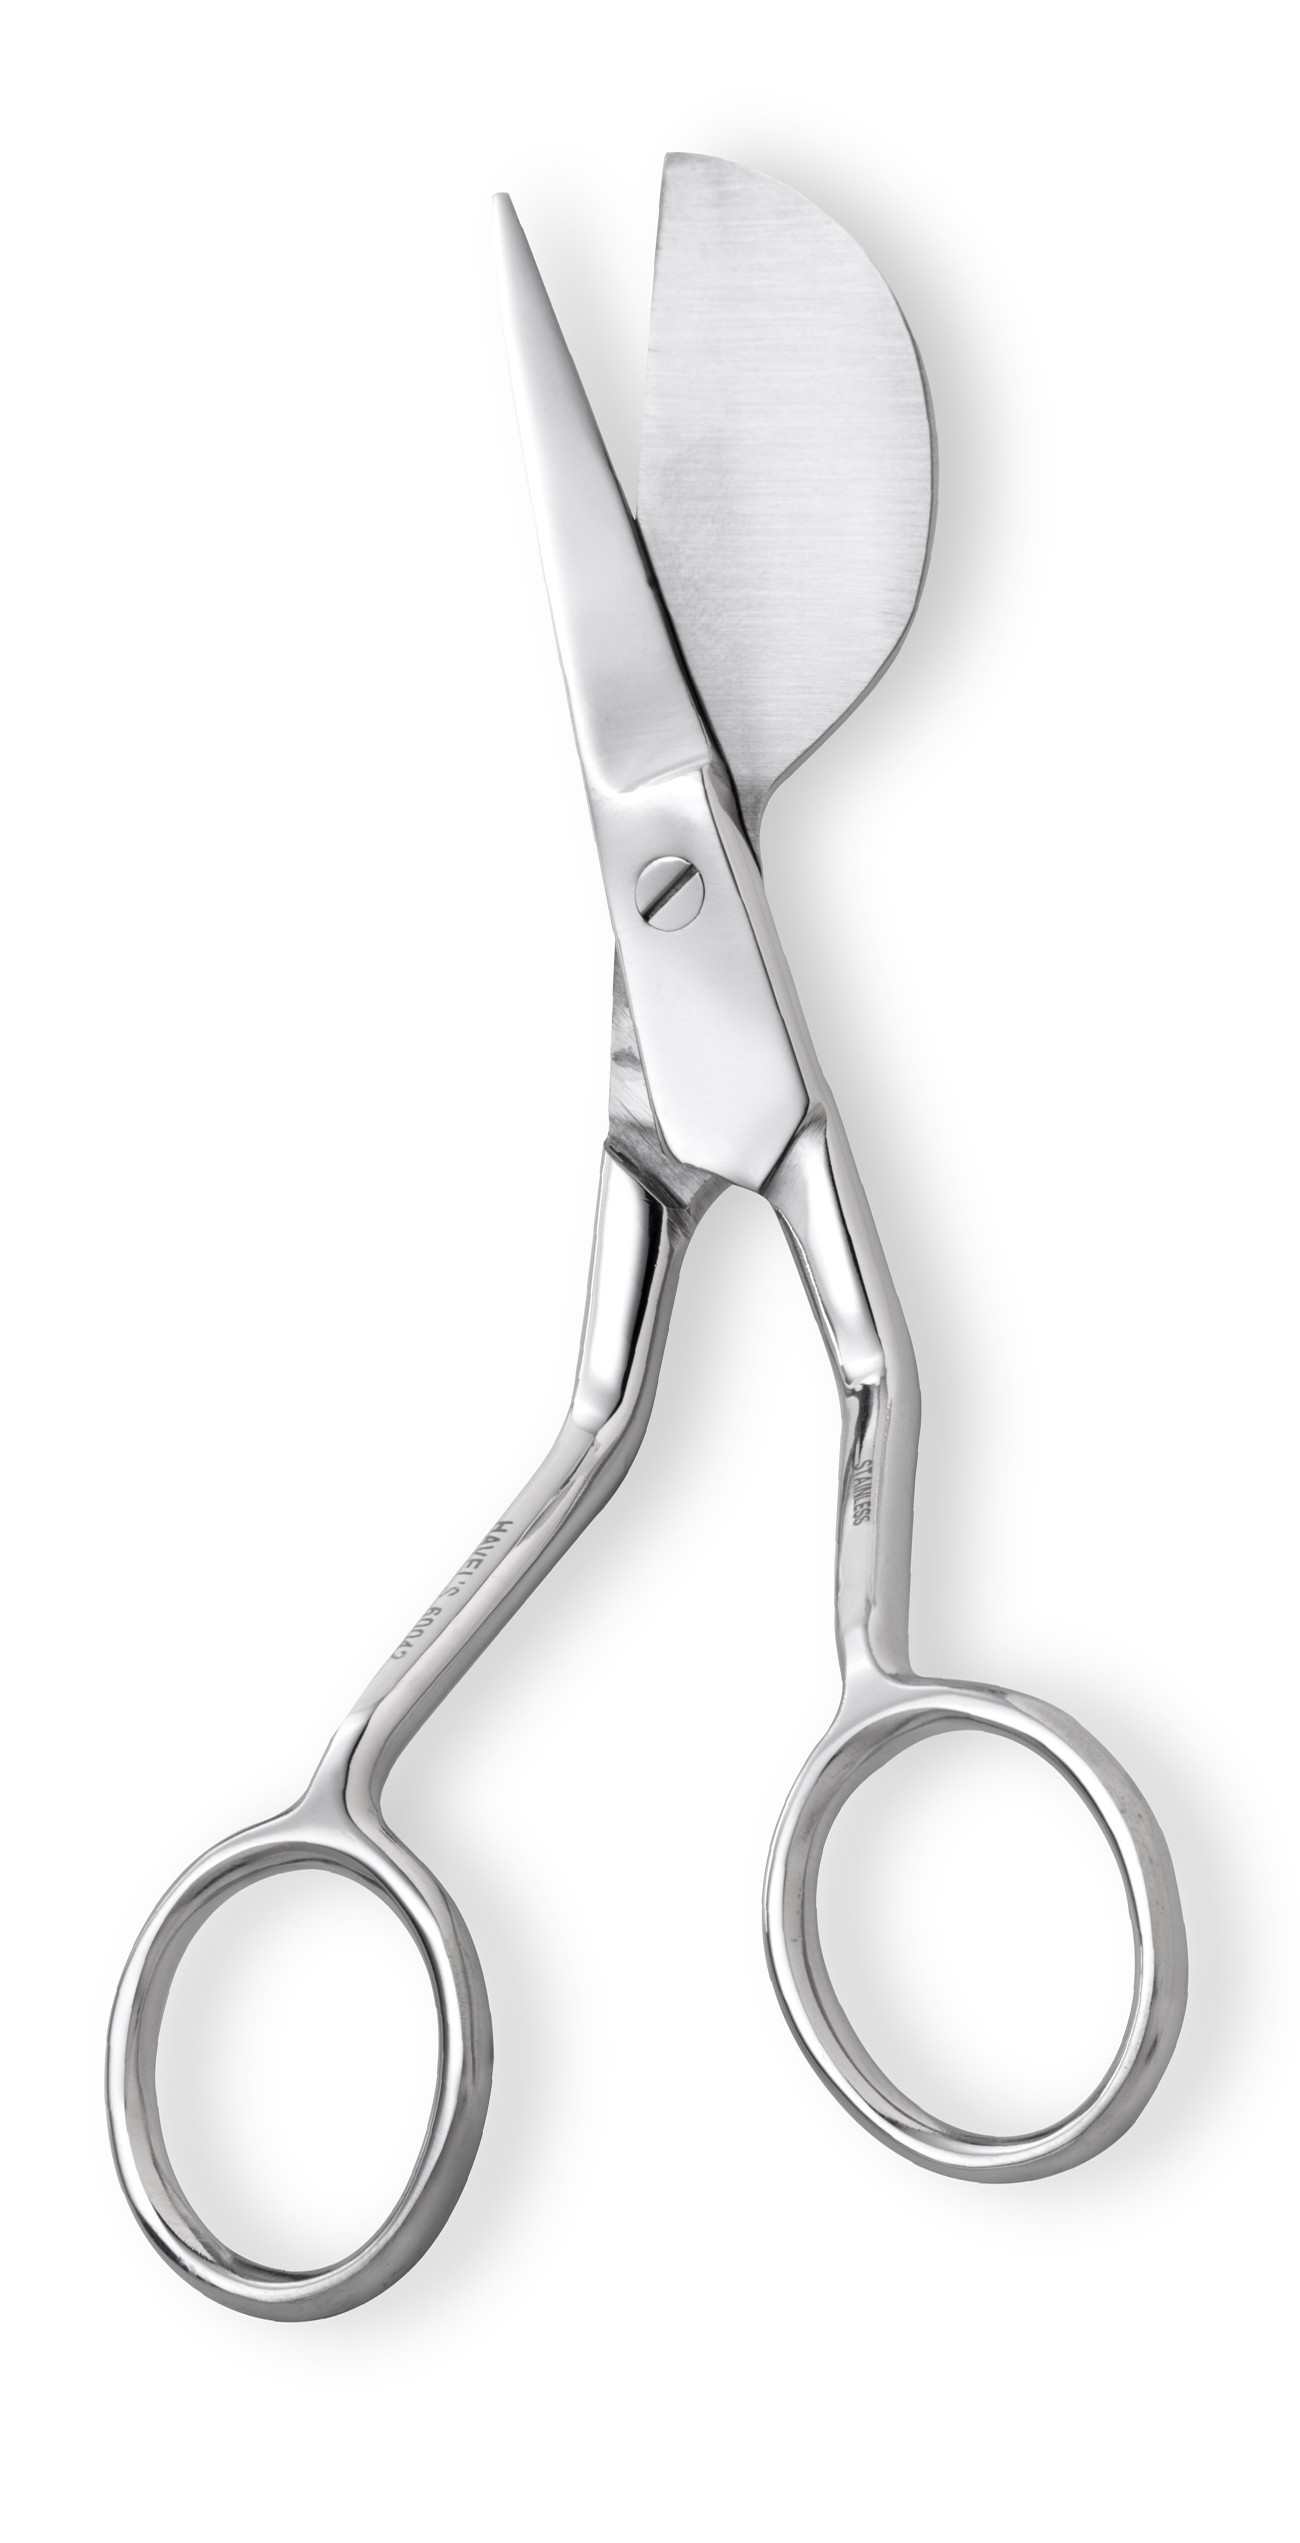 applique snip scissors